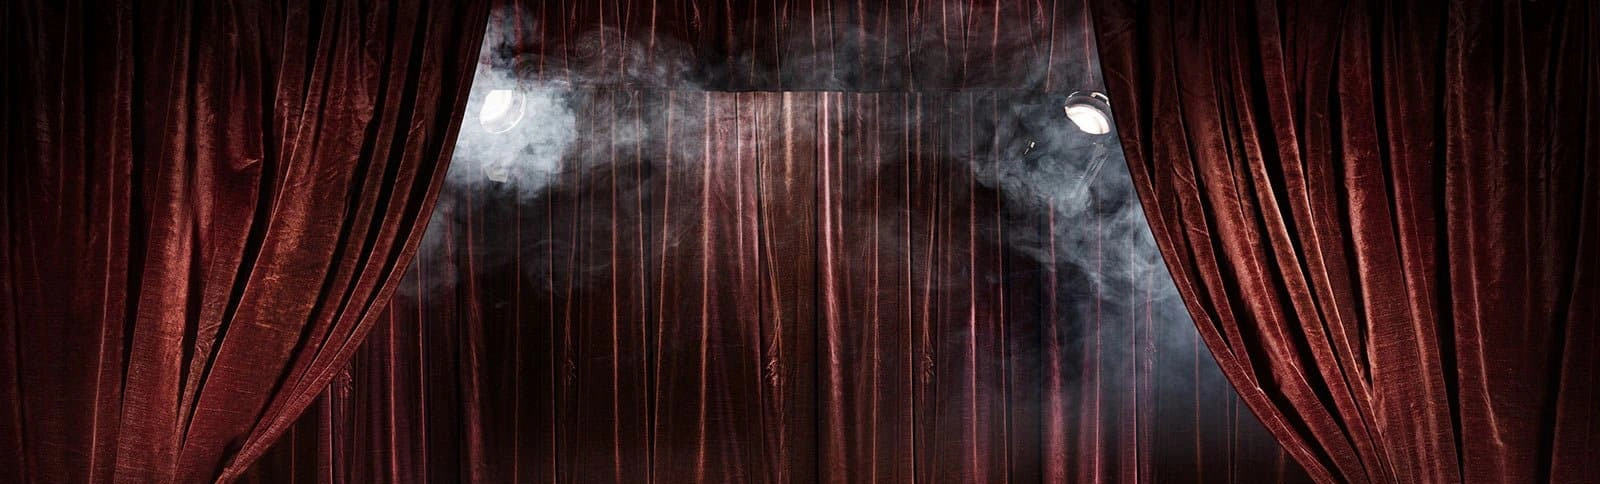 Спектакль «Муму» в рамках Международного фестиваля им.А.П. Чехова в Театре на Таганке